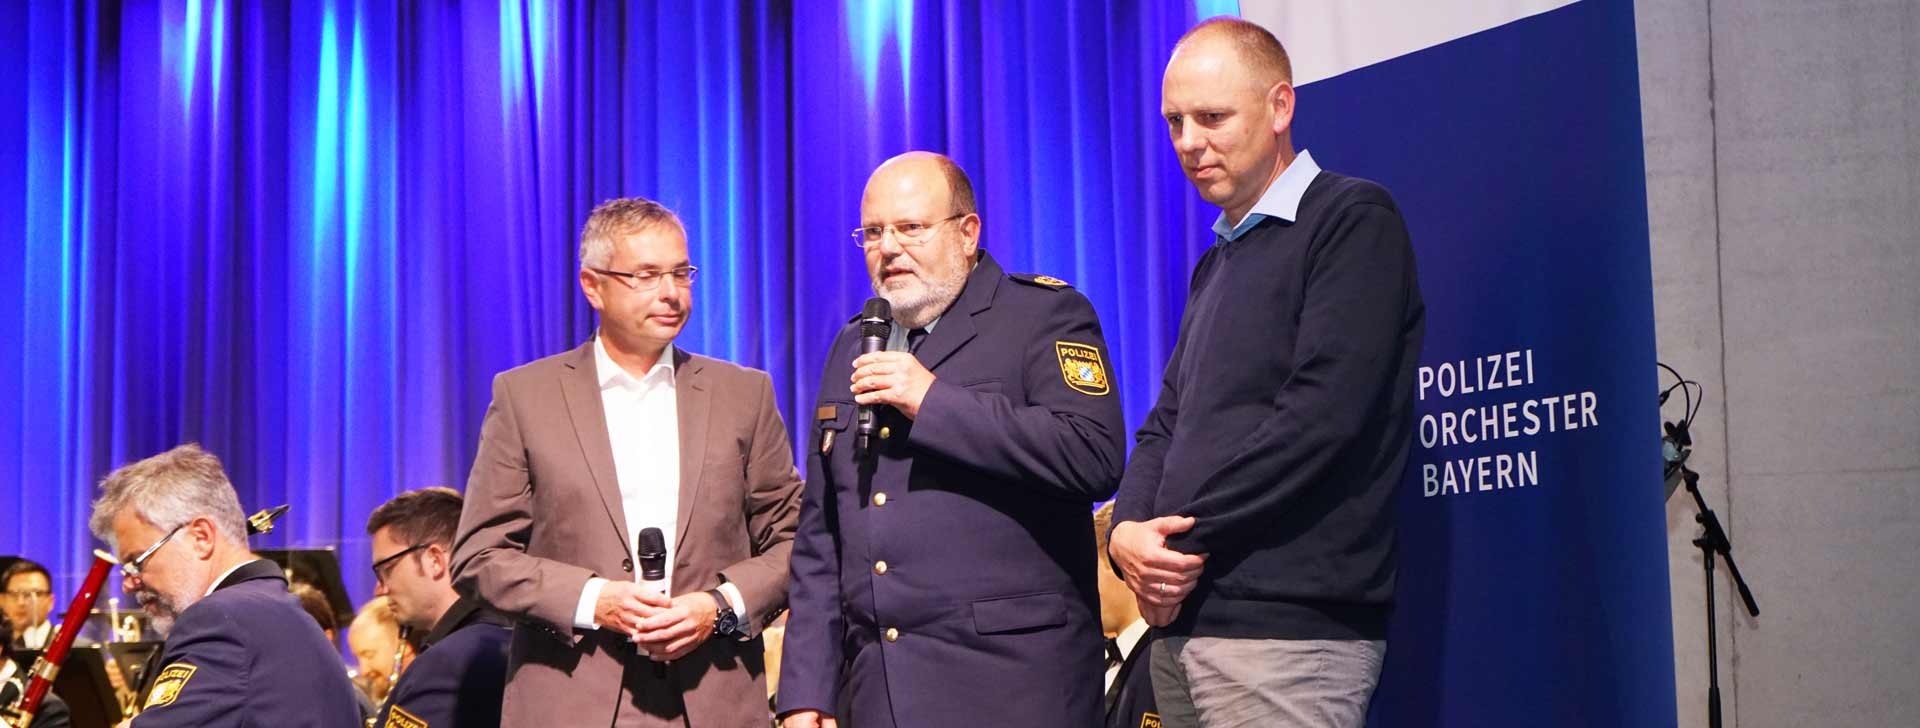 Polizeipräsident Norbert Zink und Bürgermeister Christian Hauner freuten sich über den großen Erfolg (Foto: Weingärtner)